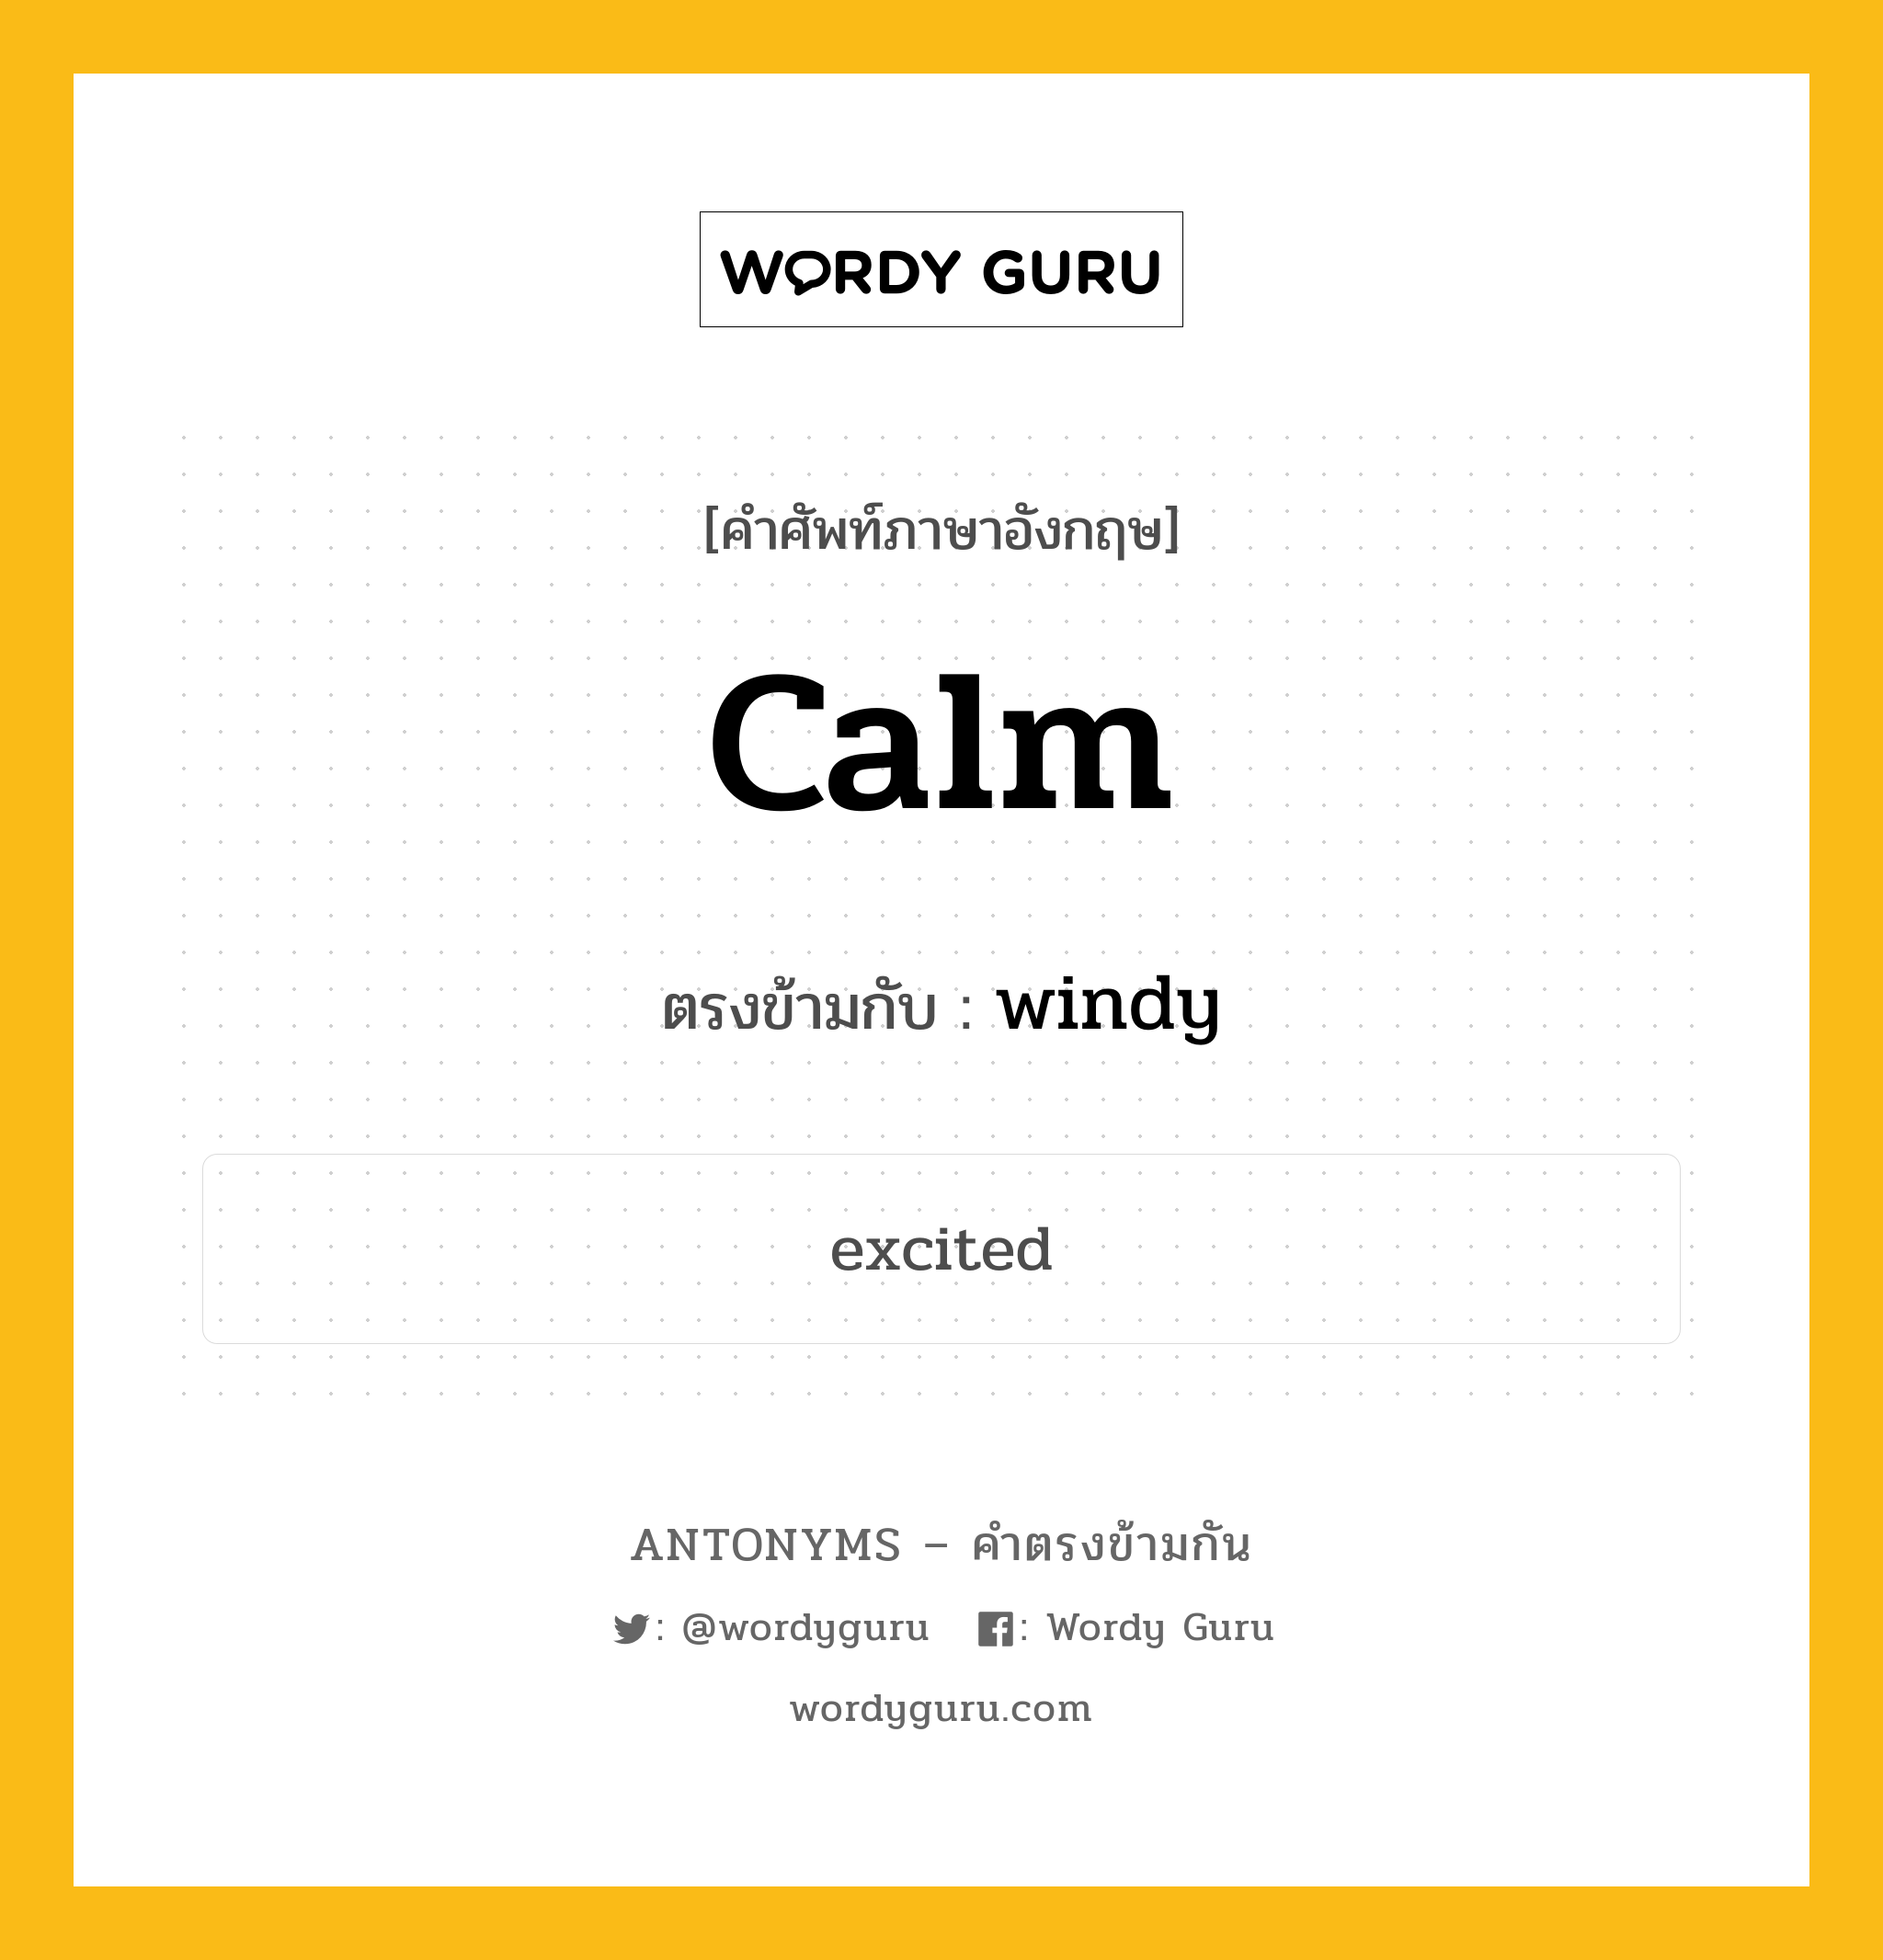 calm เป็นคำตรงข้ามกับคำไหนบ้าง?, คำศัพท์ภาษาอังกฤษ calm ตรงข้ามกับ windy หมวด windy